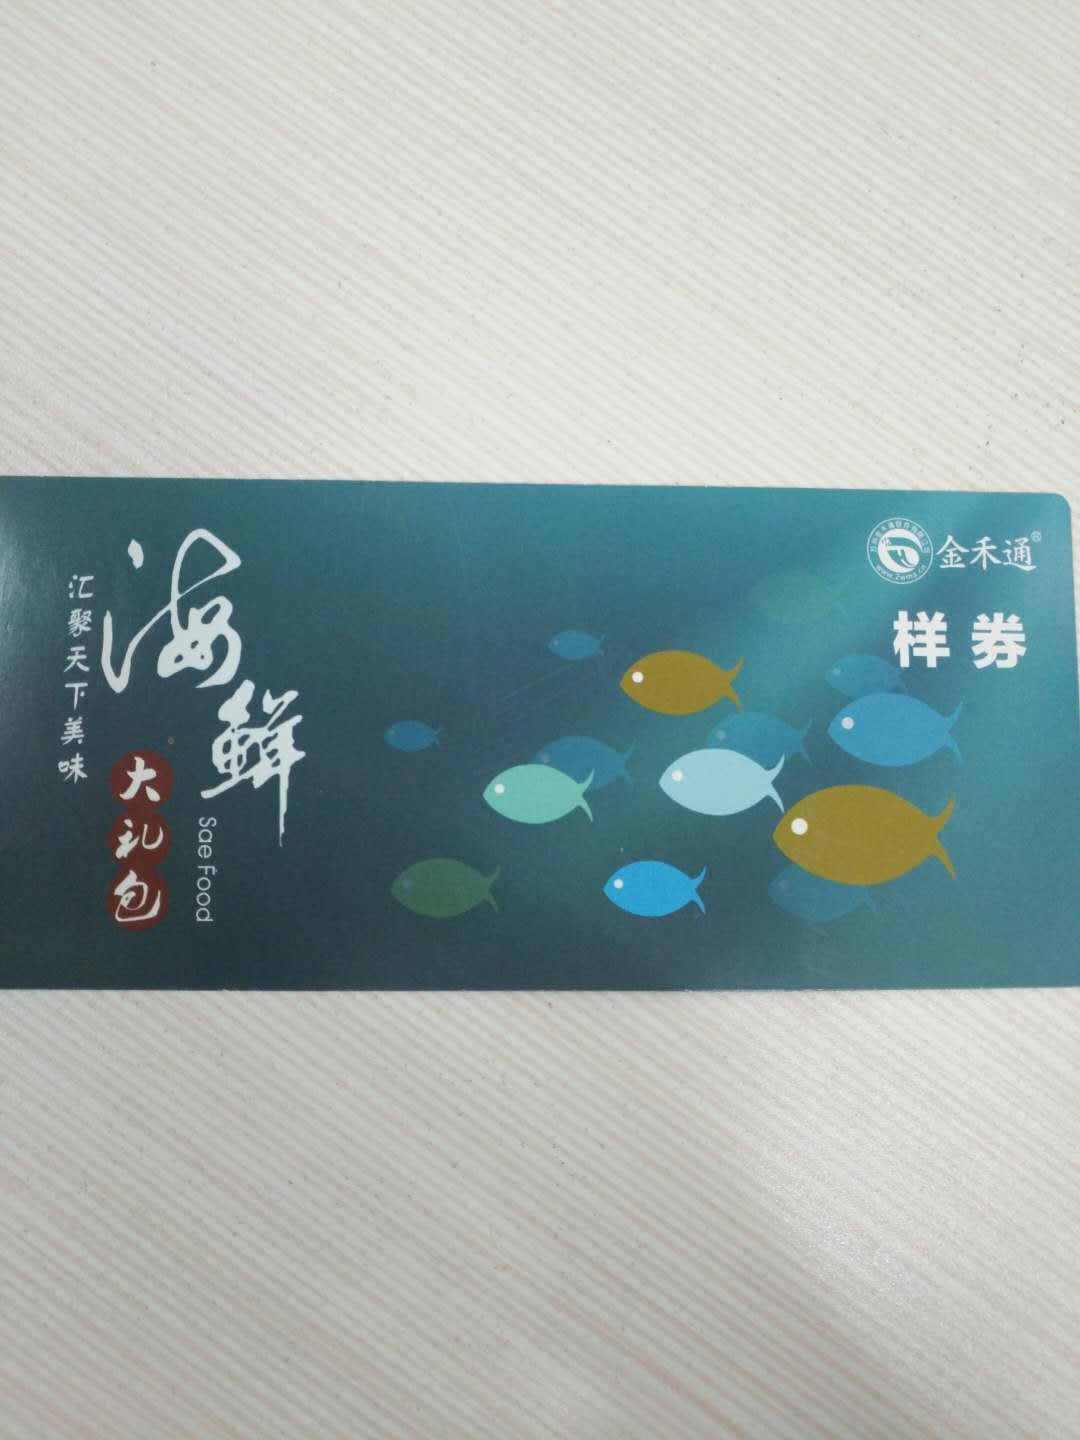 上海金禾通提货系统二维码扫码提货券卡专业快速